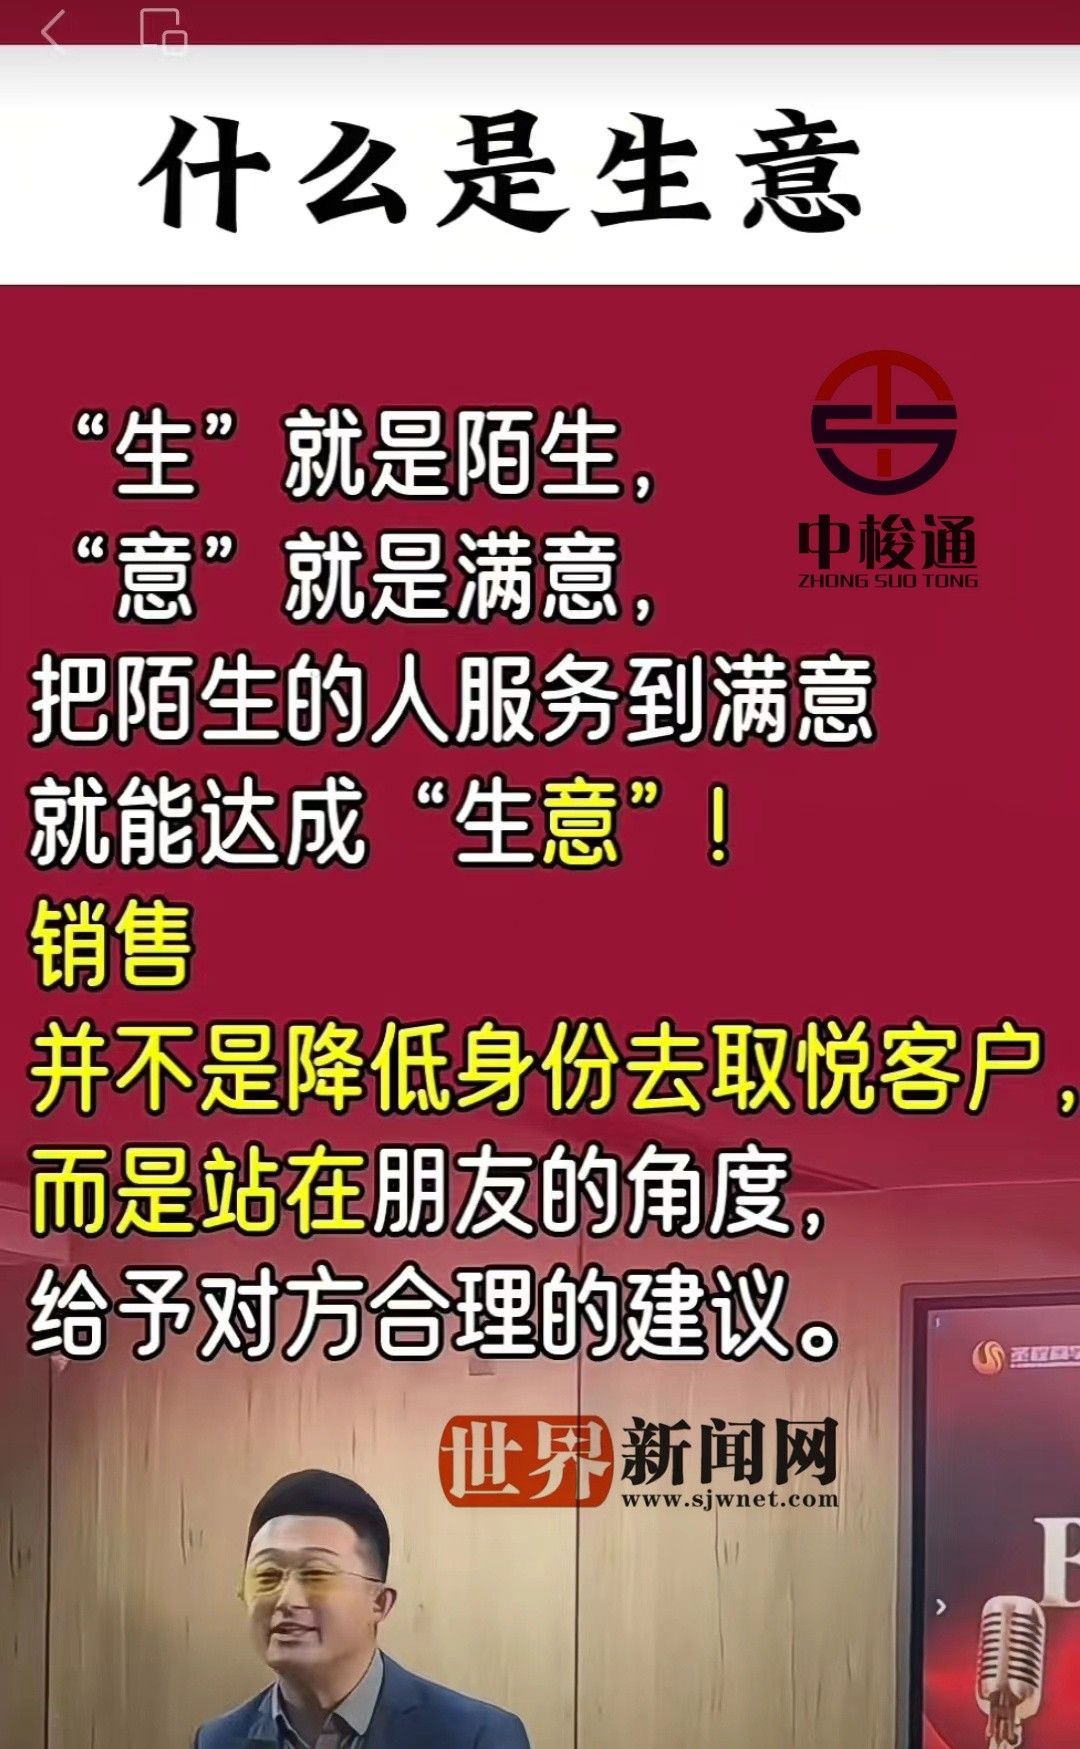 国务院台办发言人就台湾地区领导人“5·20”讲话表态